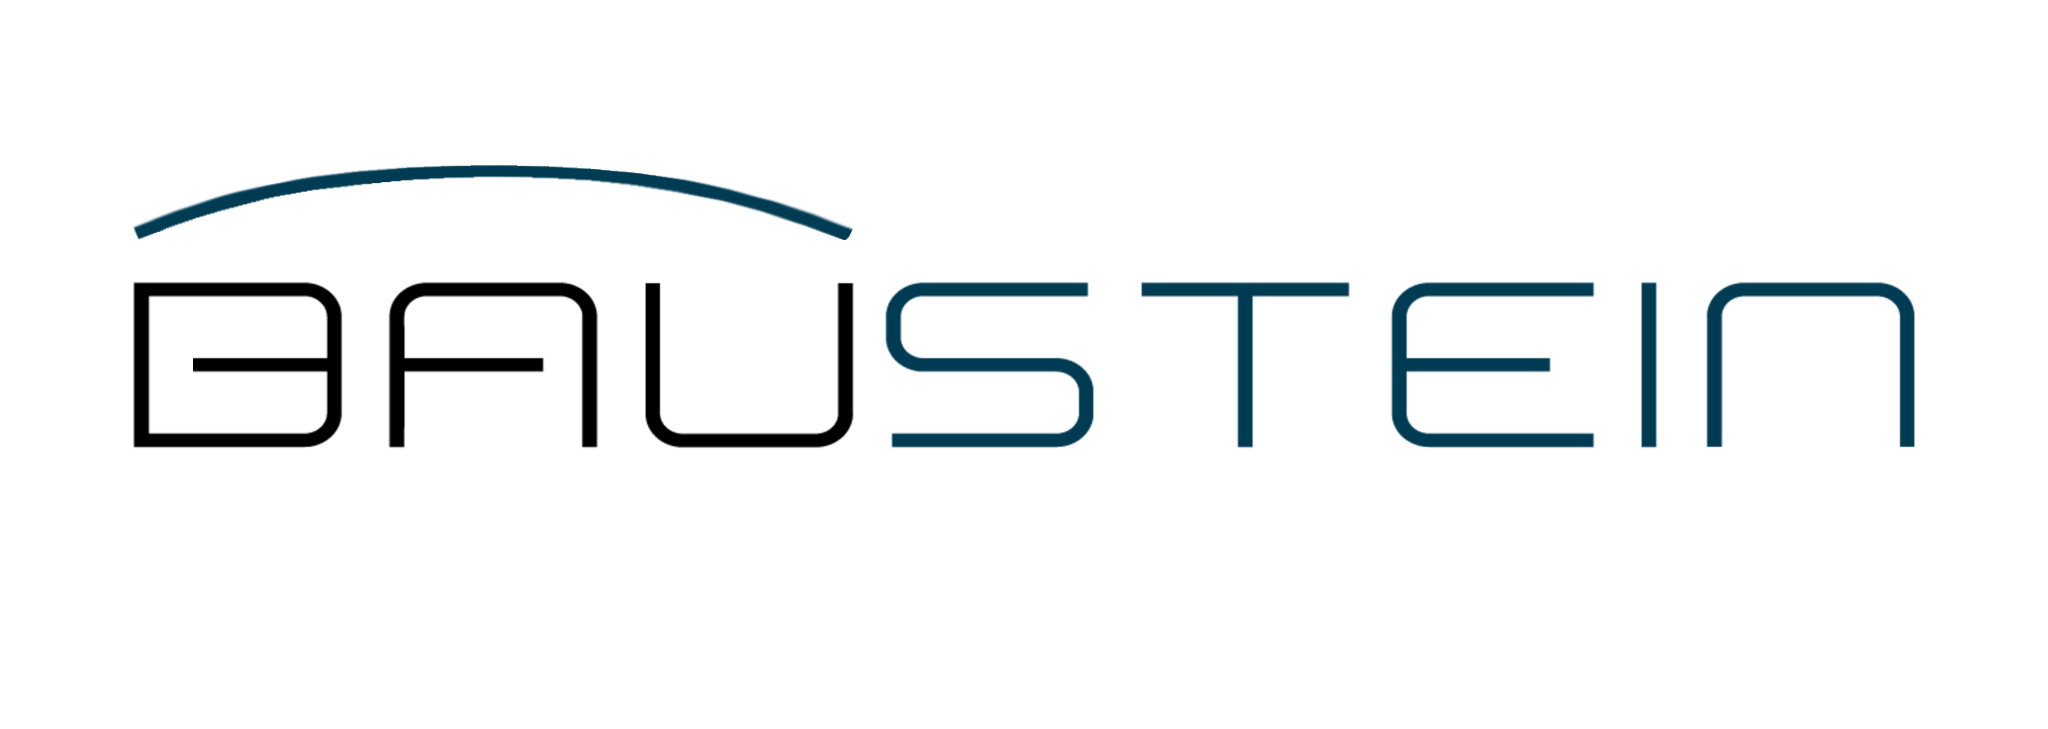 Baustein logo PNG